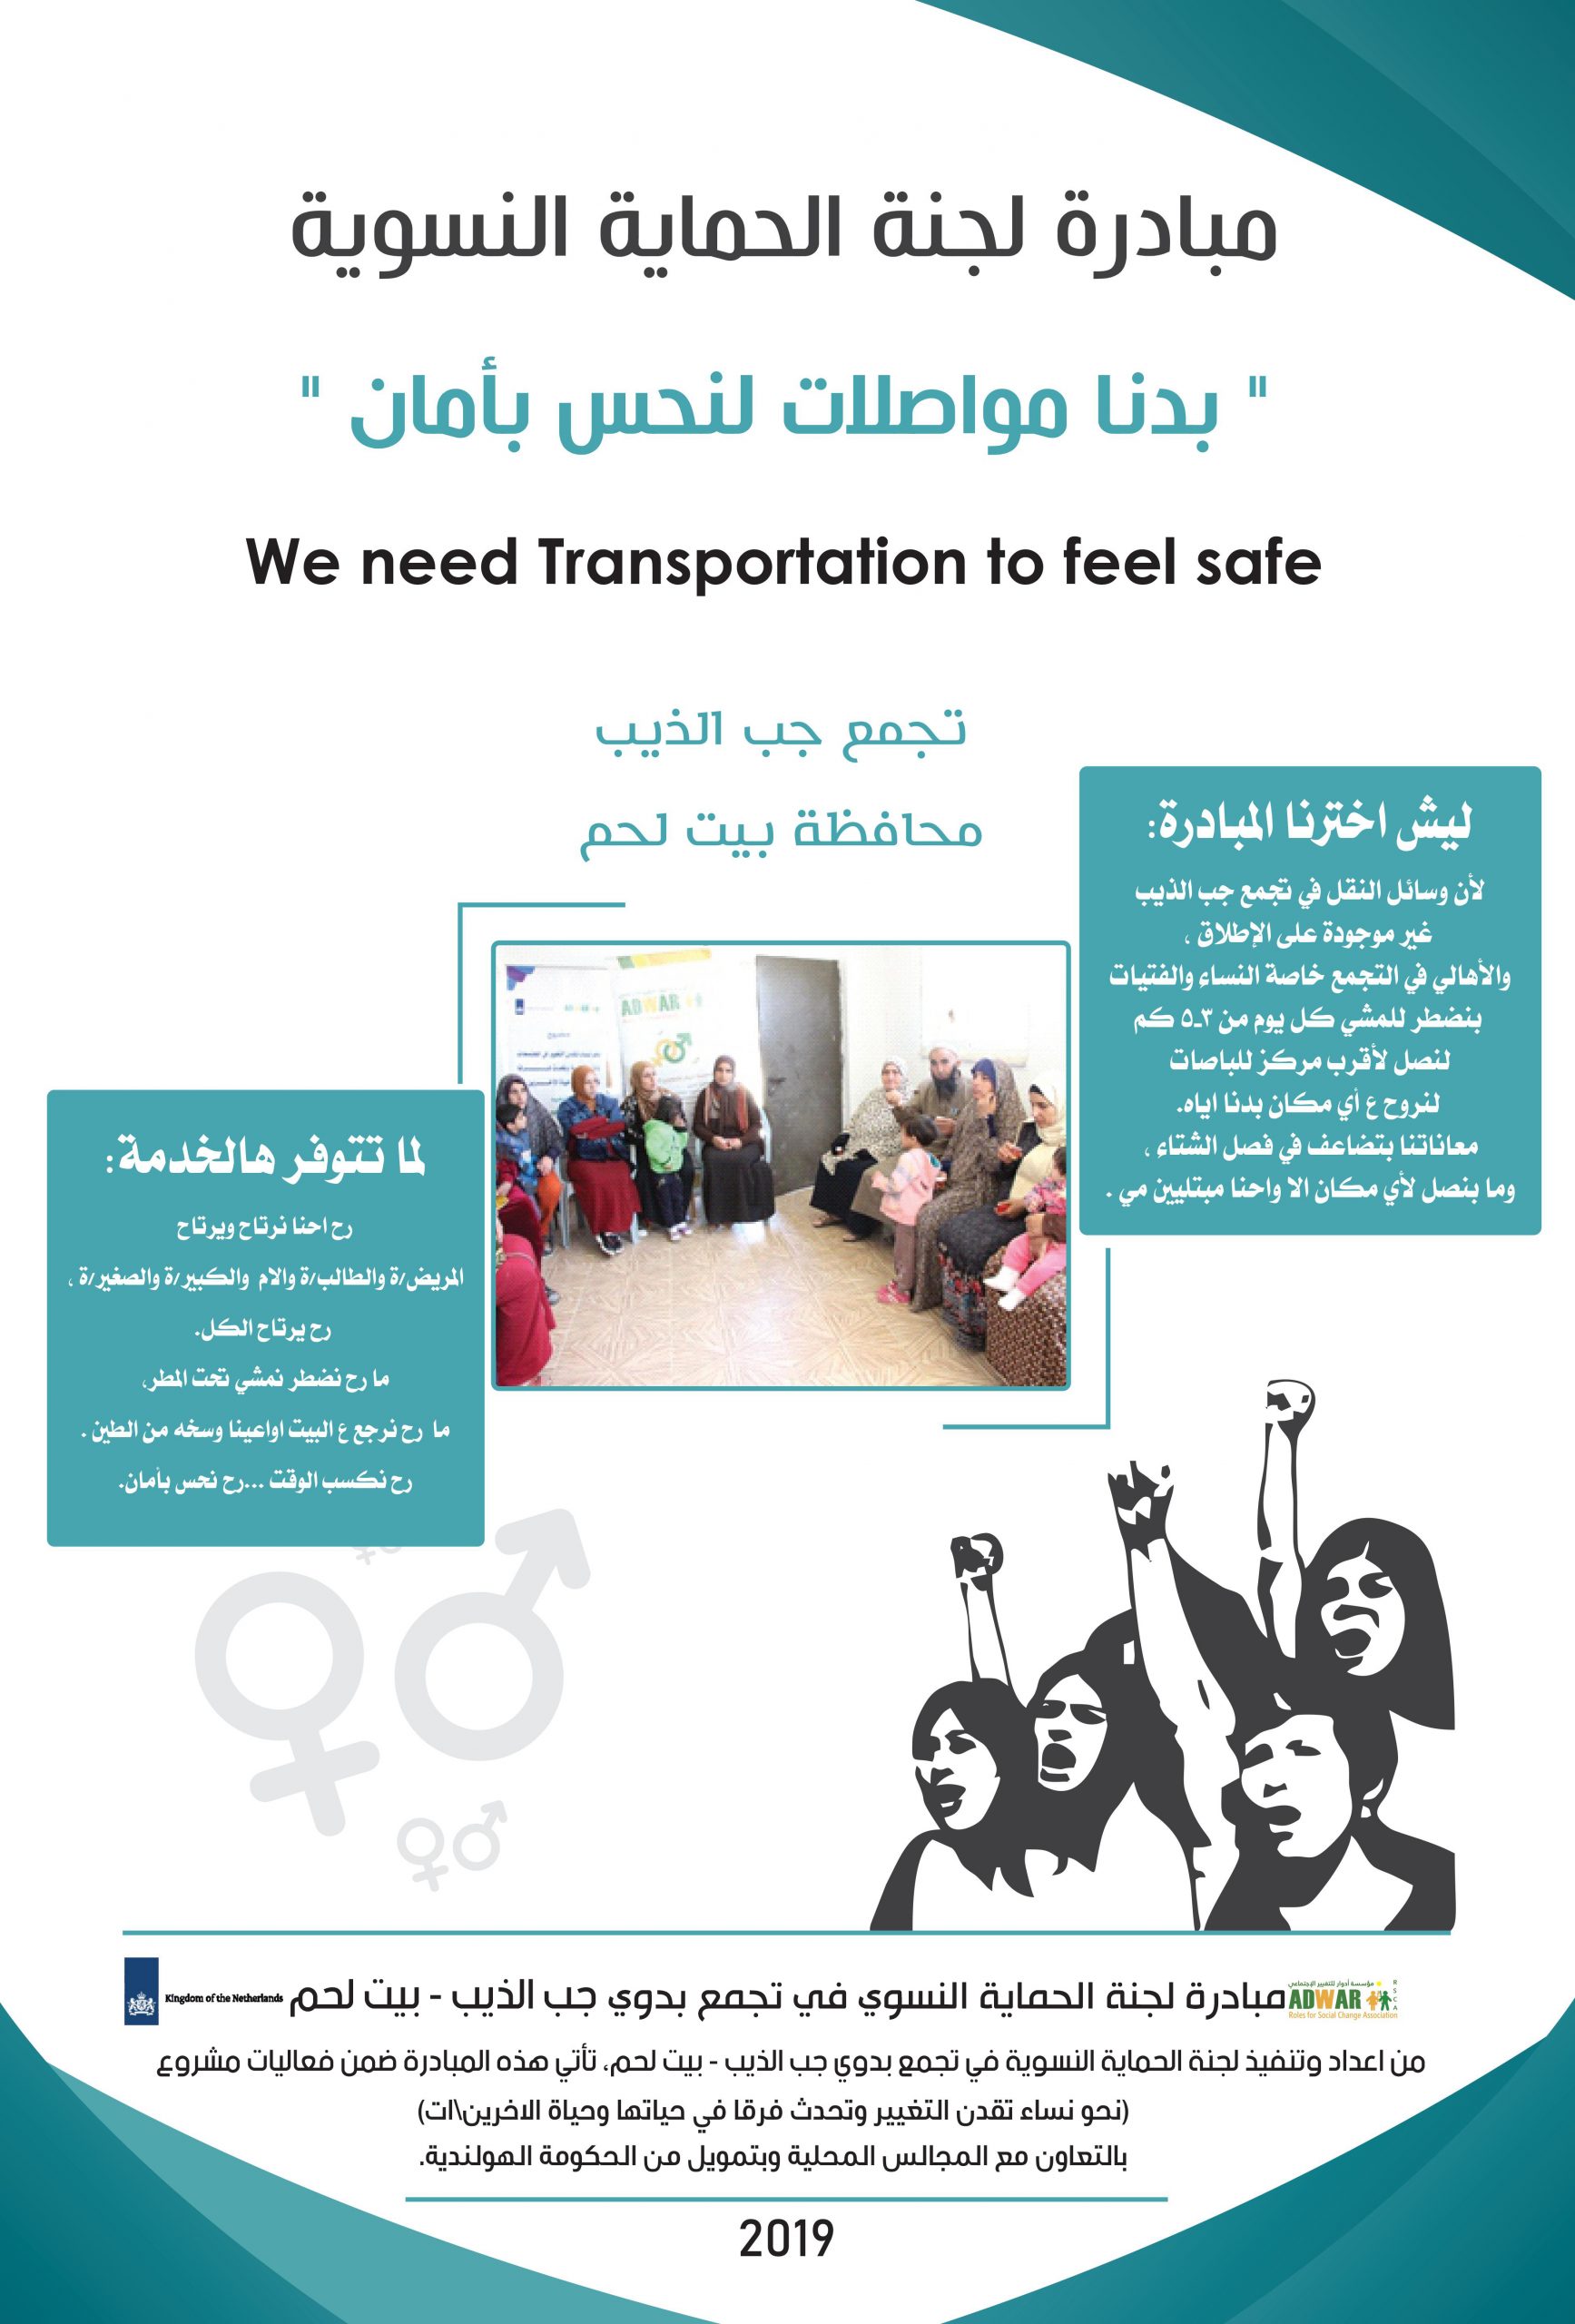  مبادرة لجنة الحماية النسوية في تجمع بدوي جب الذيب محافظة بيت لحم